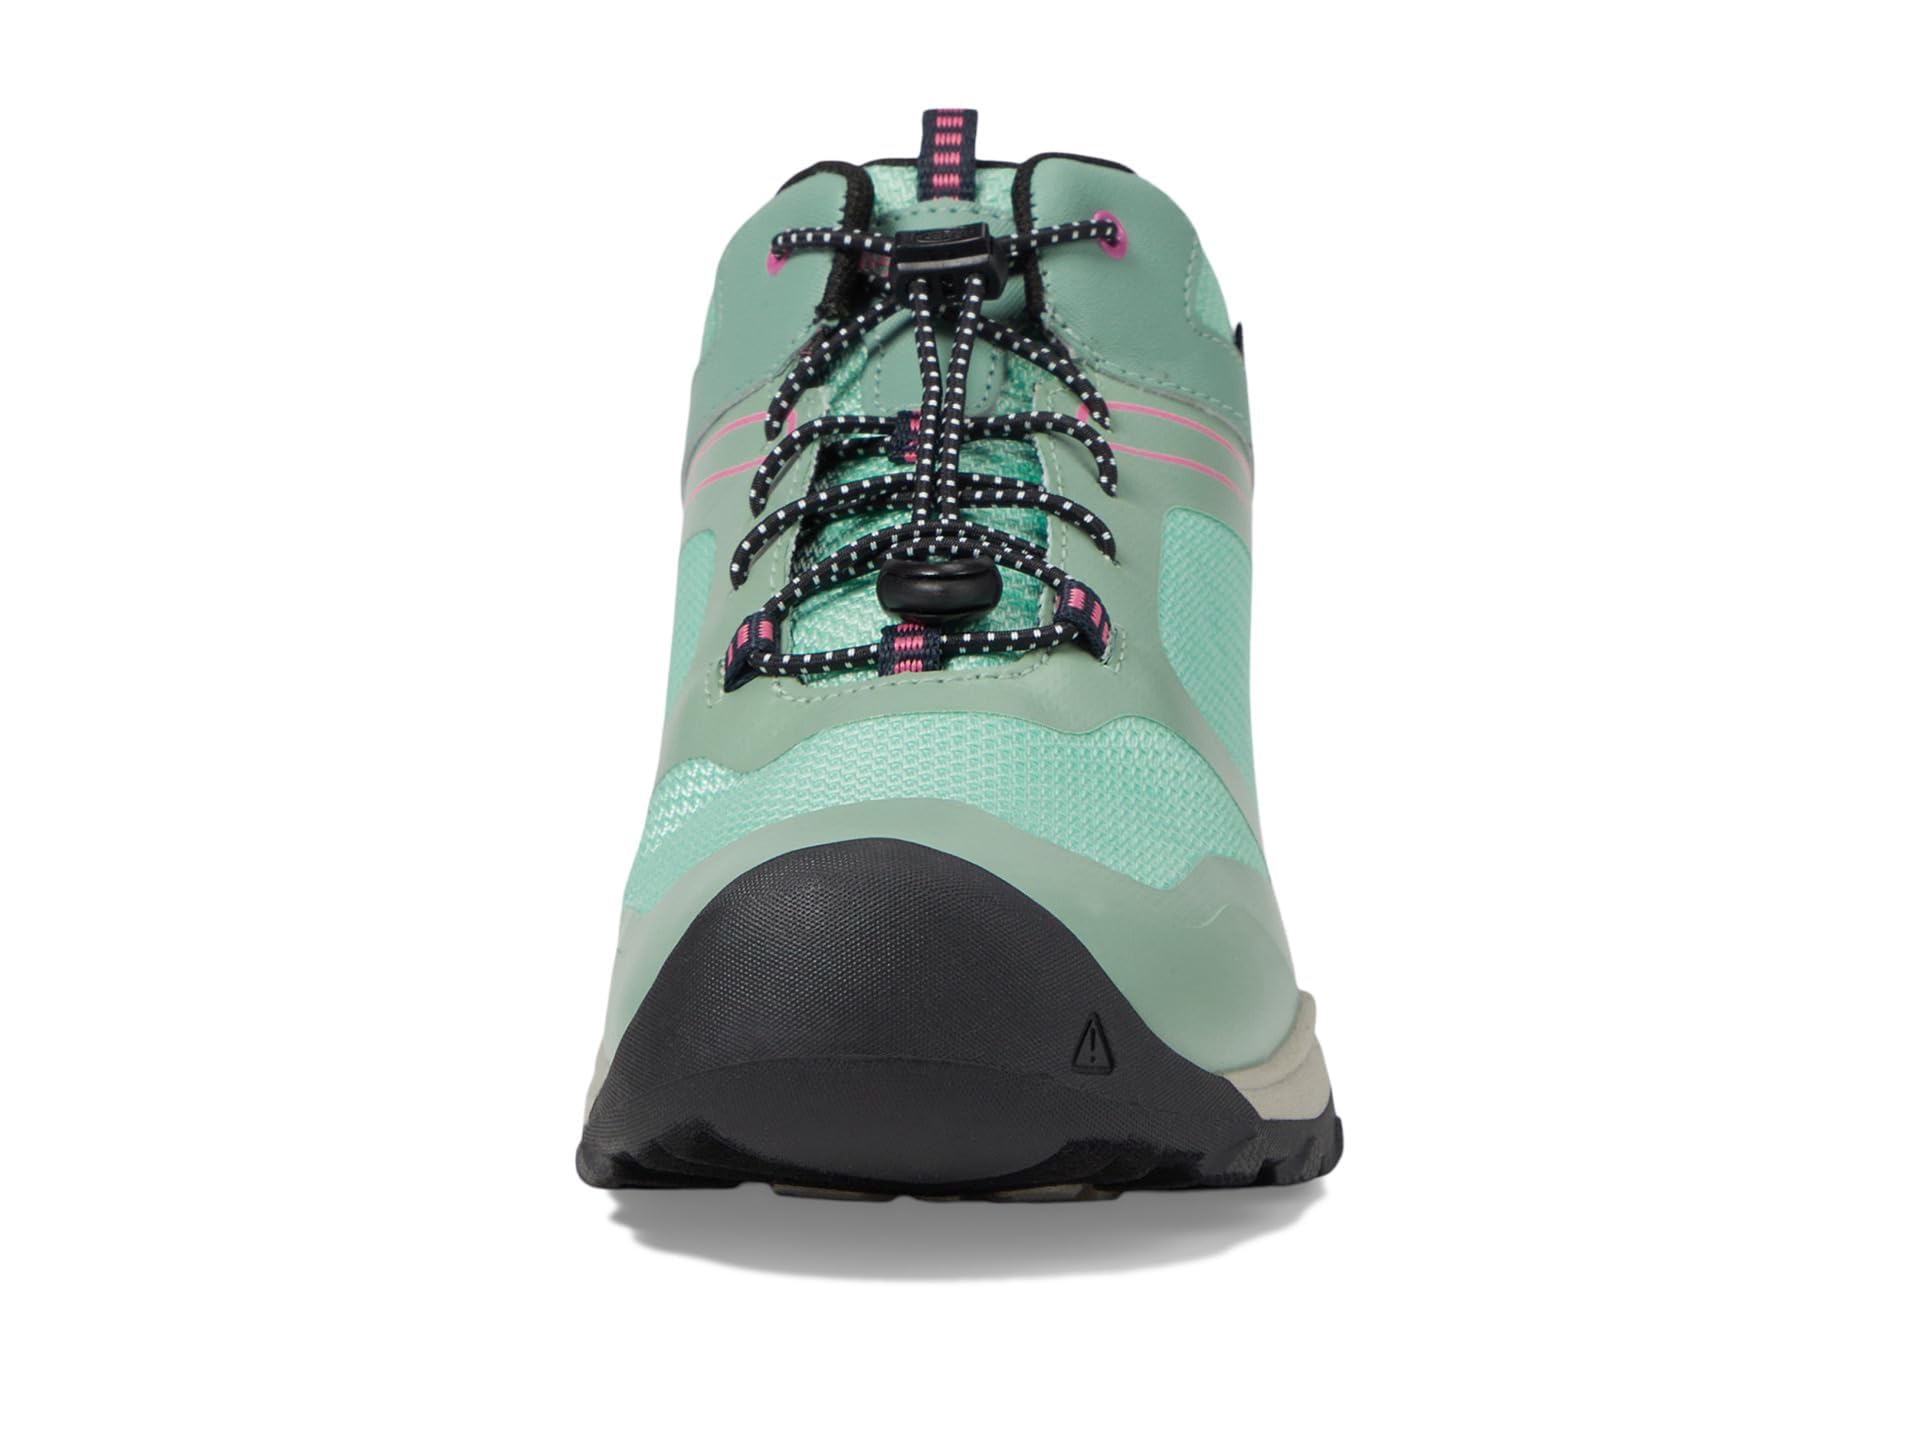 KEEN Wanduro Mid Height Waterproof Easy On Durable Sneaker Hiking Boots, Granite Green/Ibis Rose, 2 US Unisex Big Kid